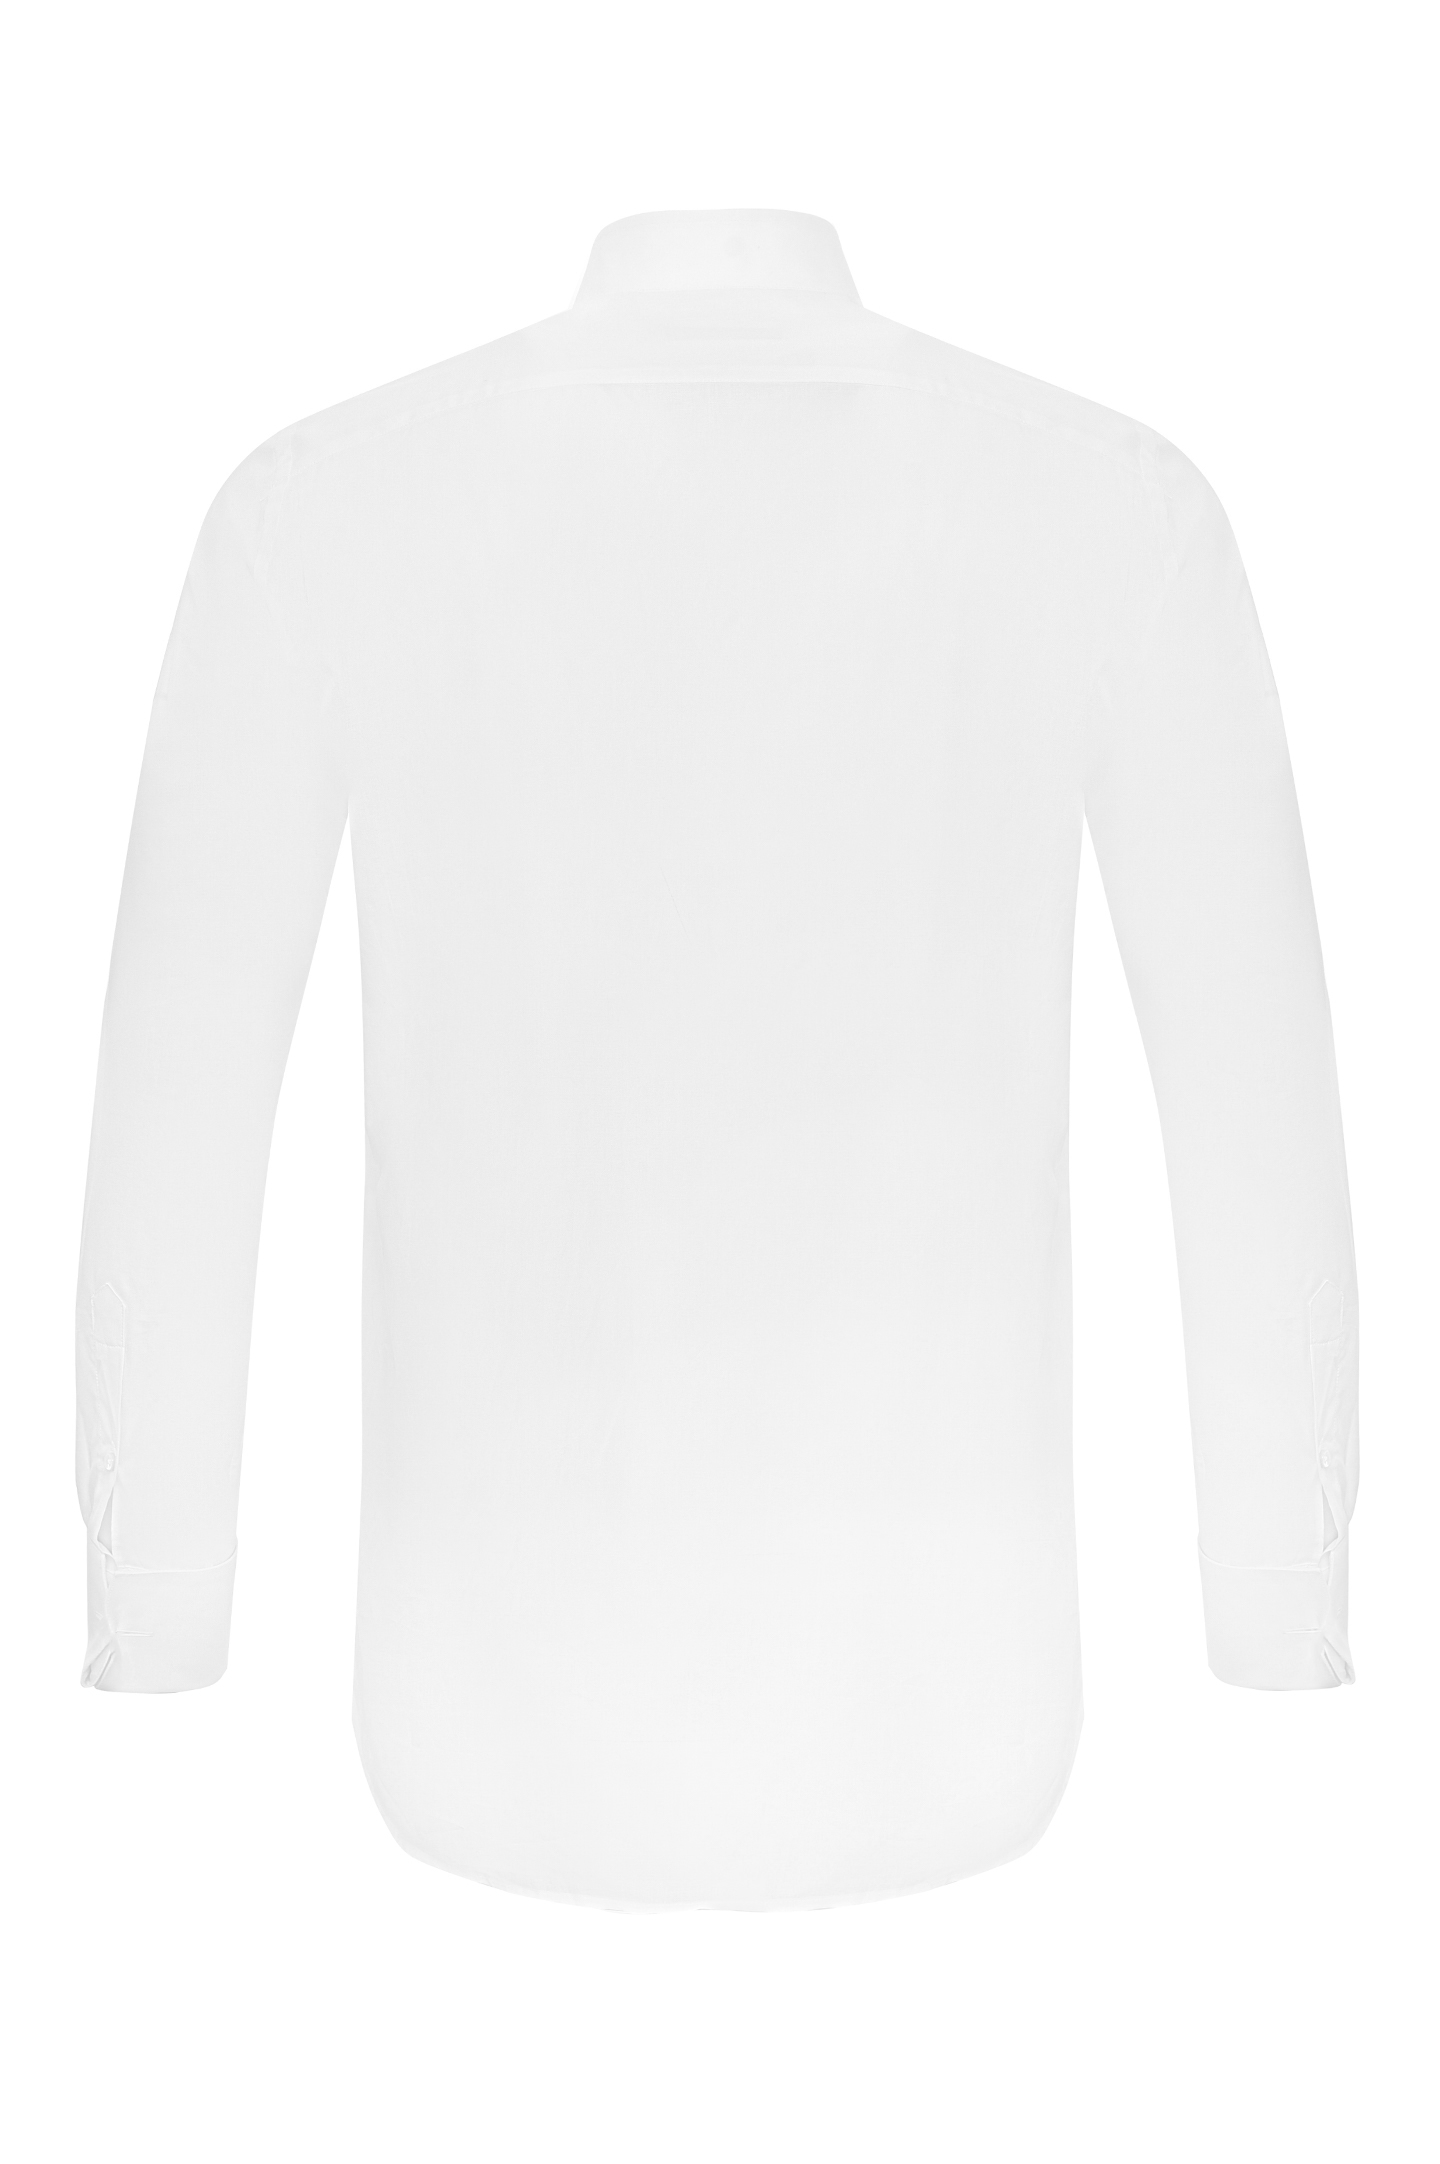 Рубашка CANALI GC00134/001, цвет: Белый, Мужской